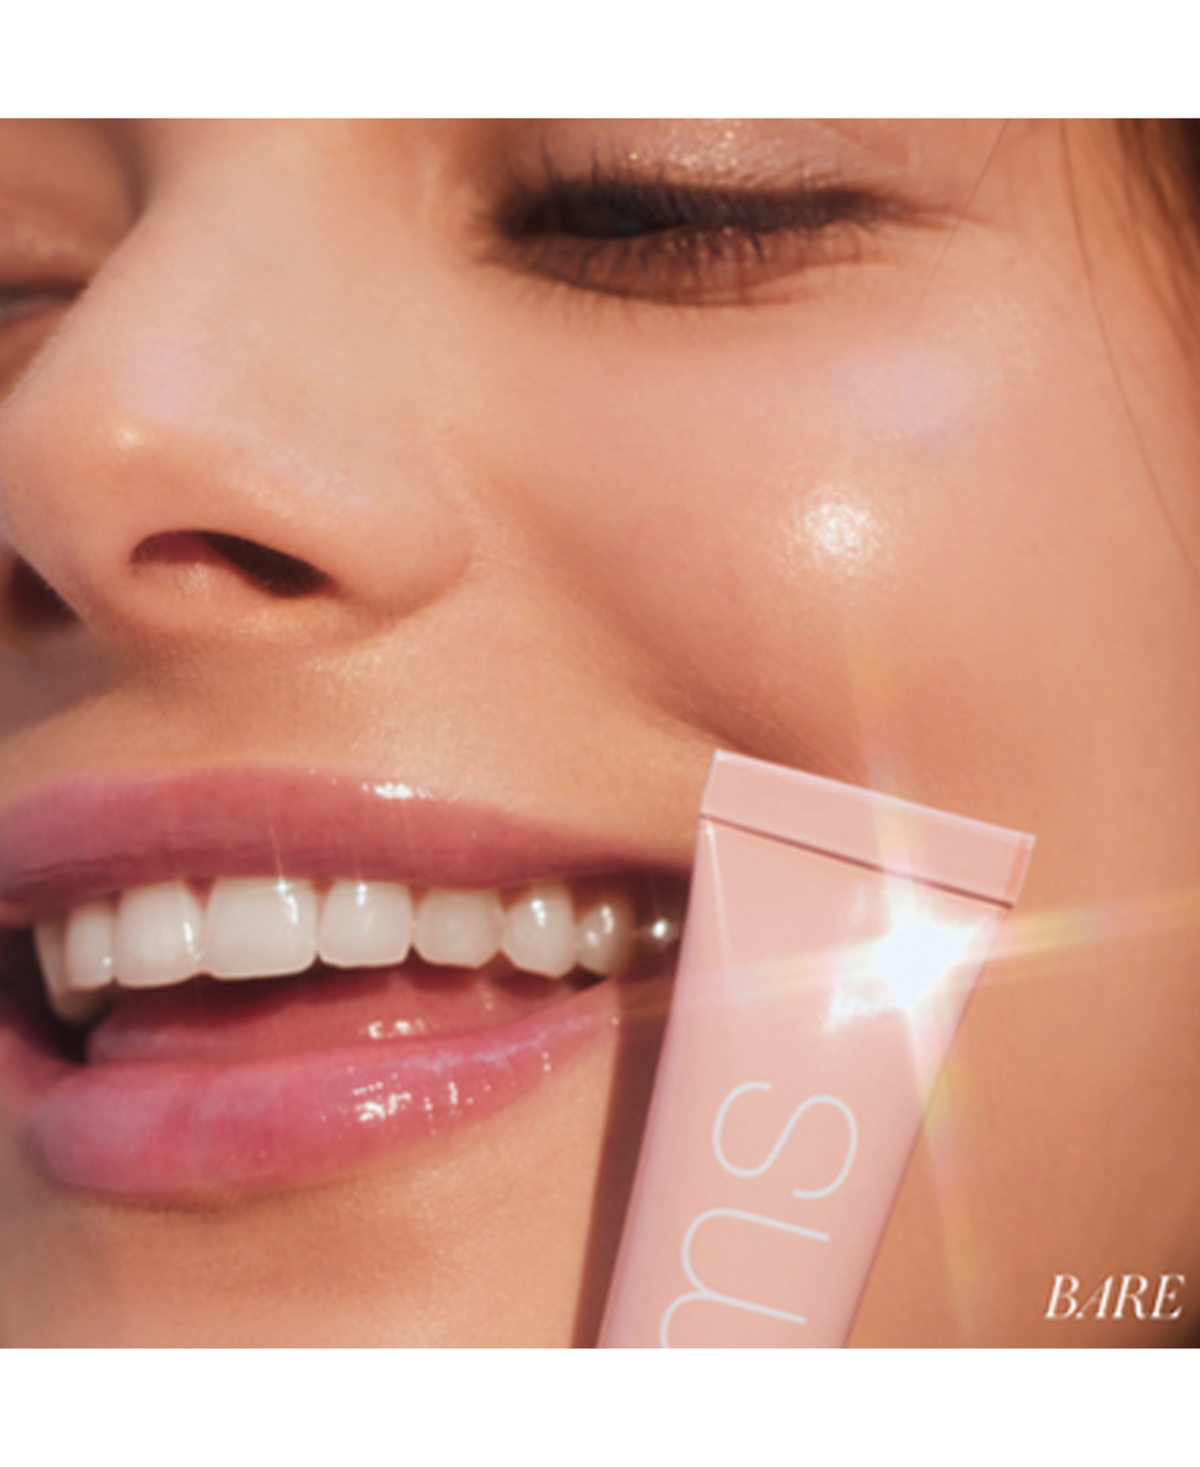 Shop Rms Beauty Liplights Cream Lip Gloss In Rhapsody